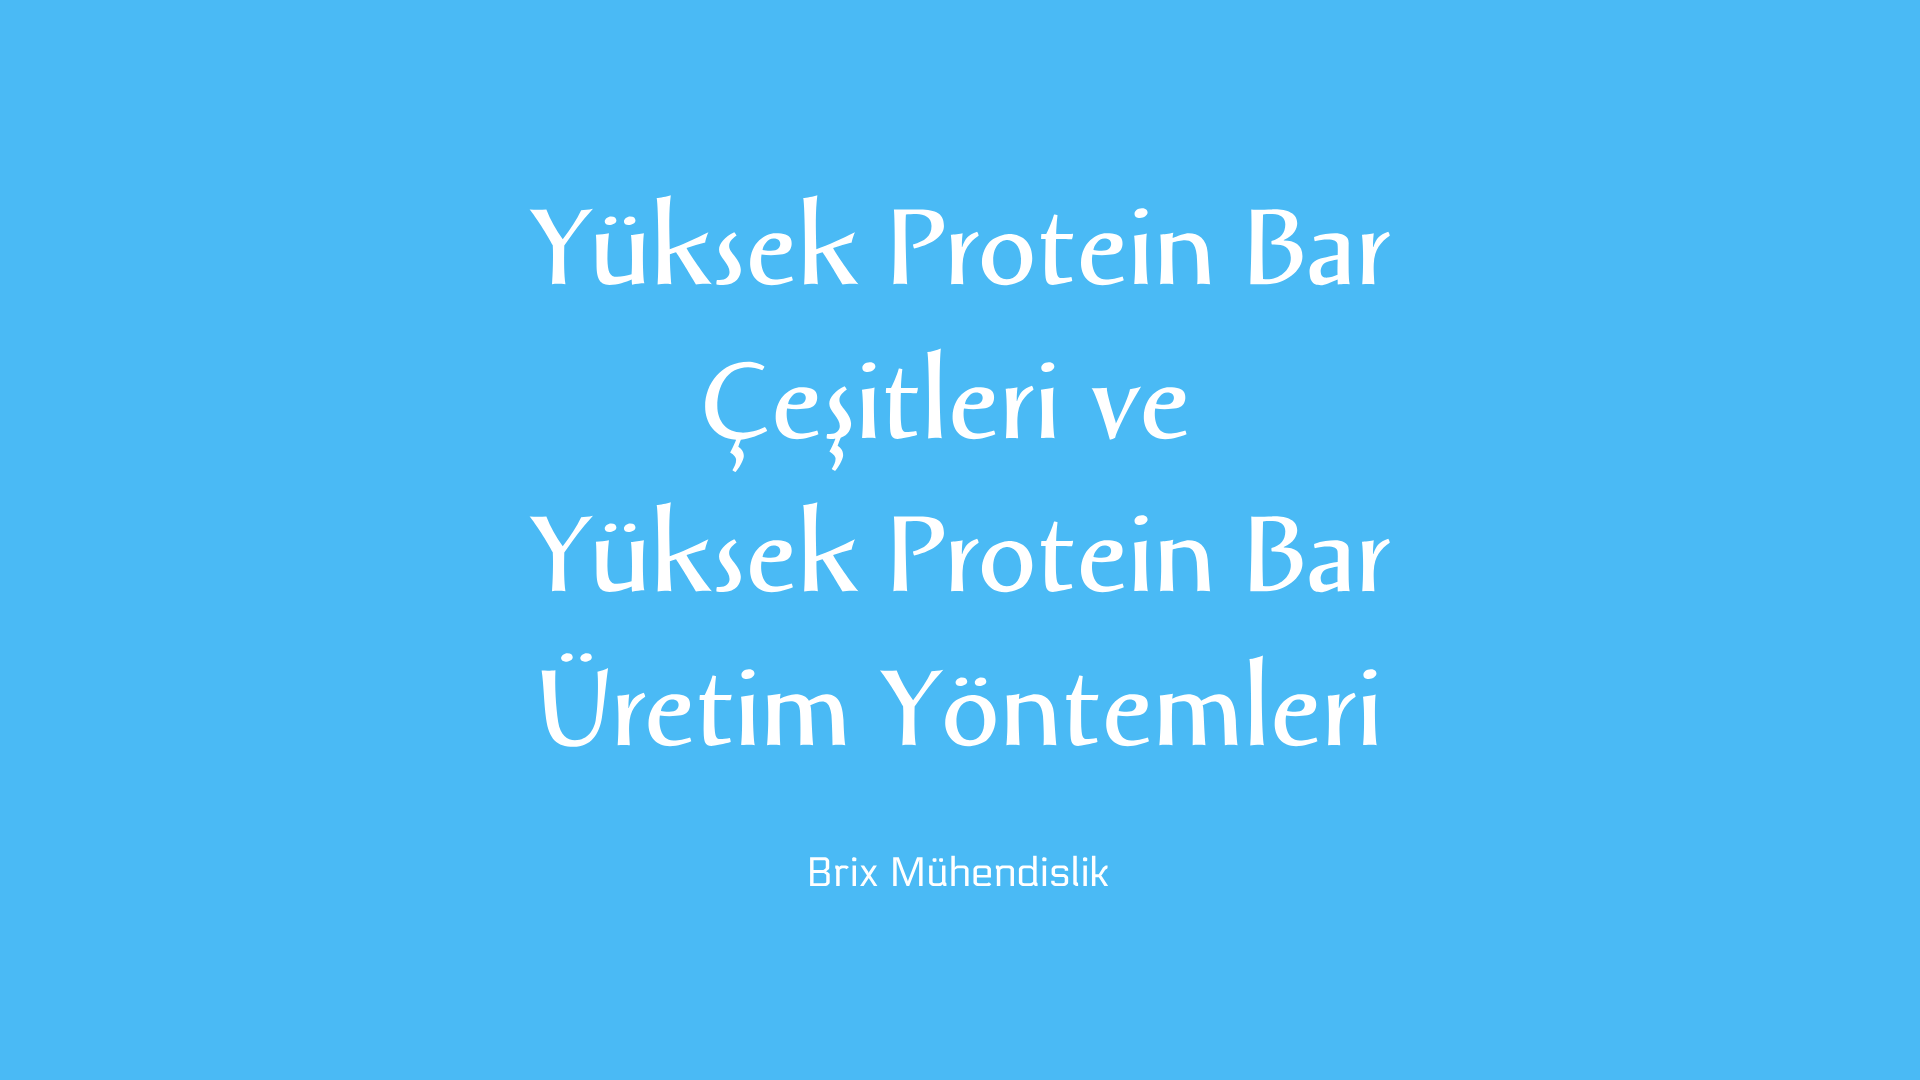 Protein bar nasıl üretilir, yüksek protein bar çeşitleri ve yüksek protein bar üretim yöntemleri